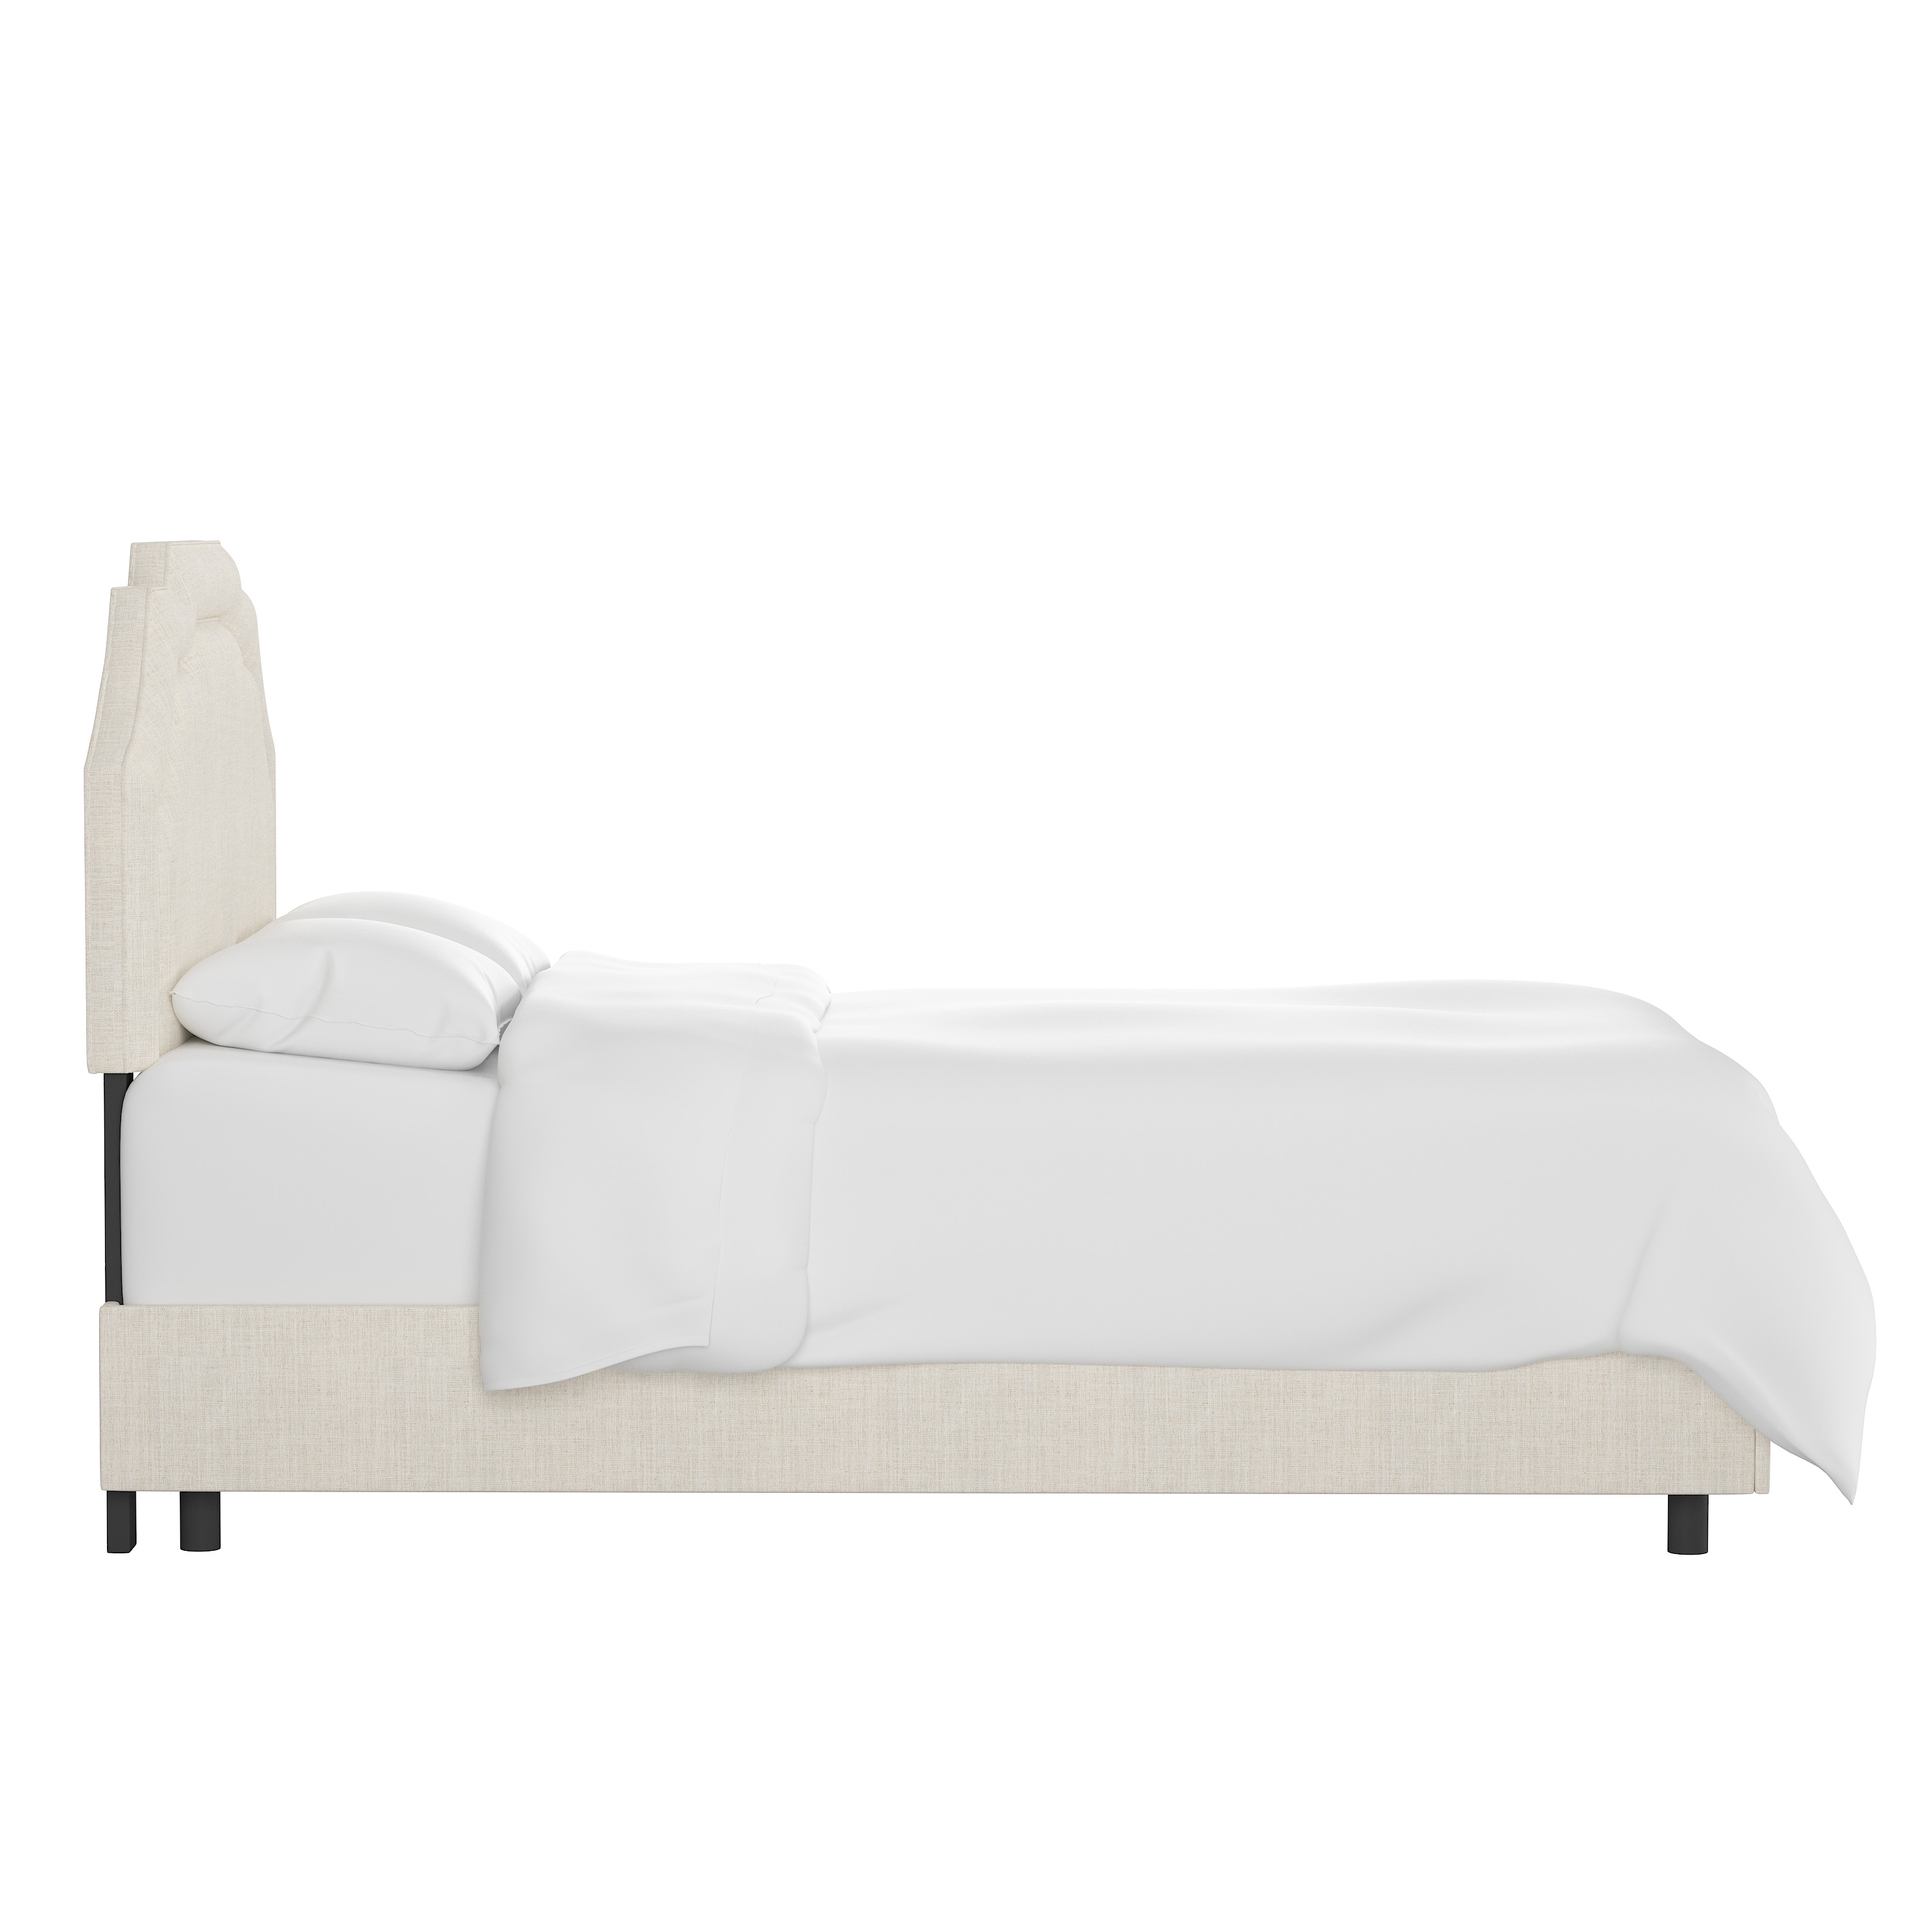 Queen Leona Bed in Linen Talc - Image 2